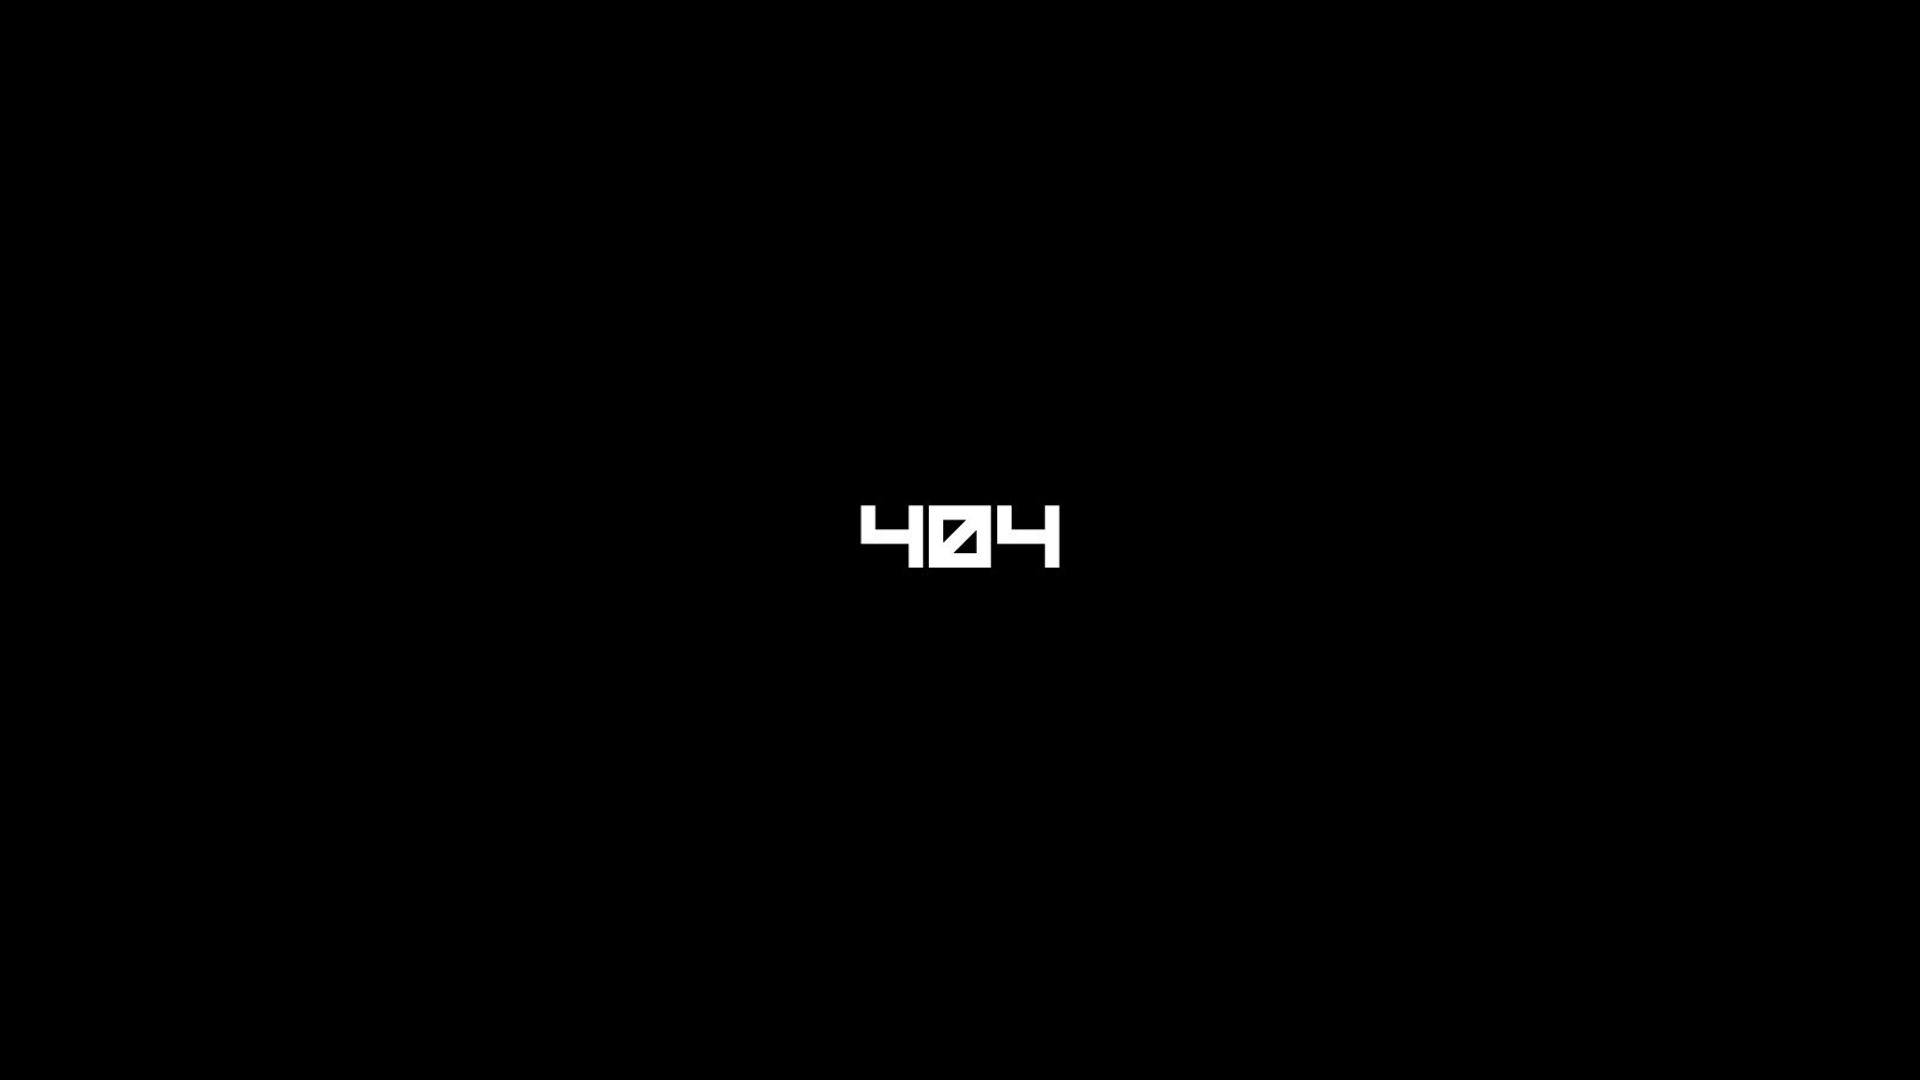 404 not found, technology, error, black & white, minimalist download HD wallpaper